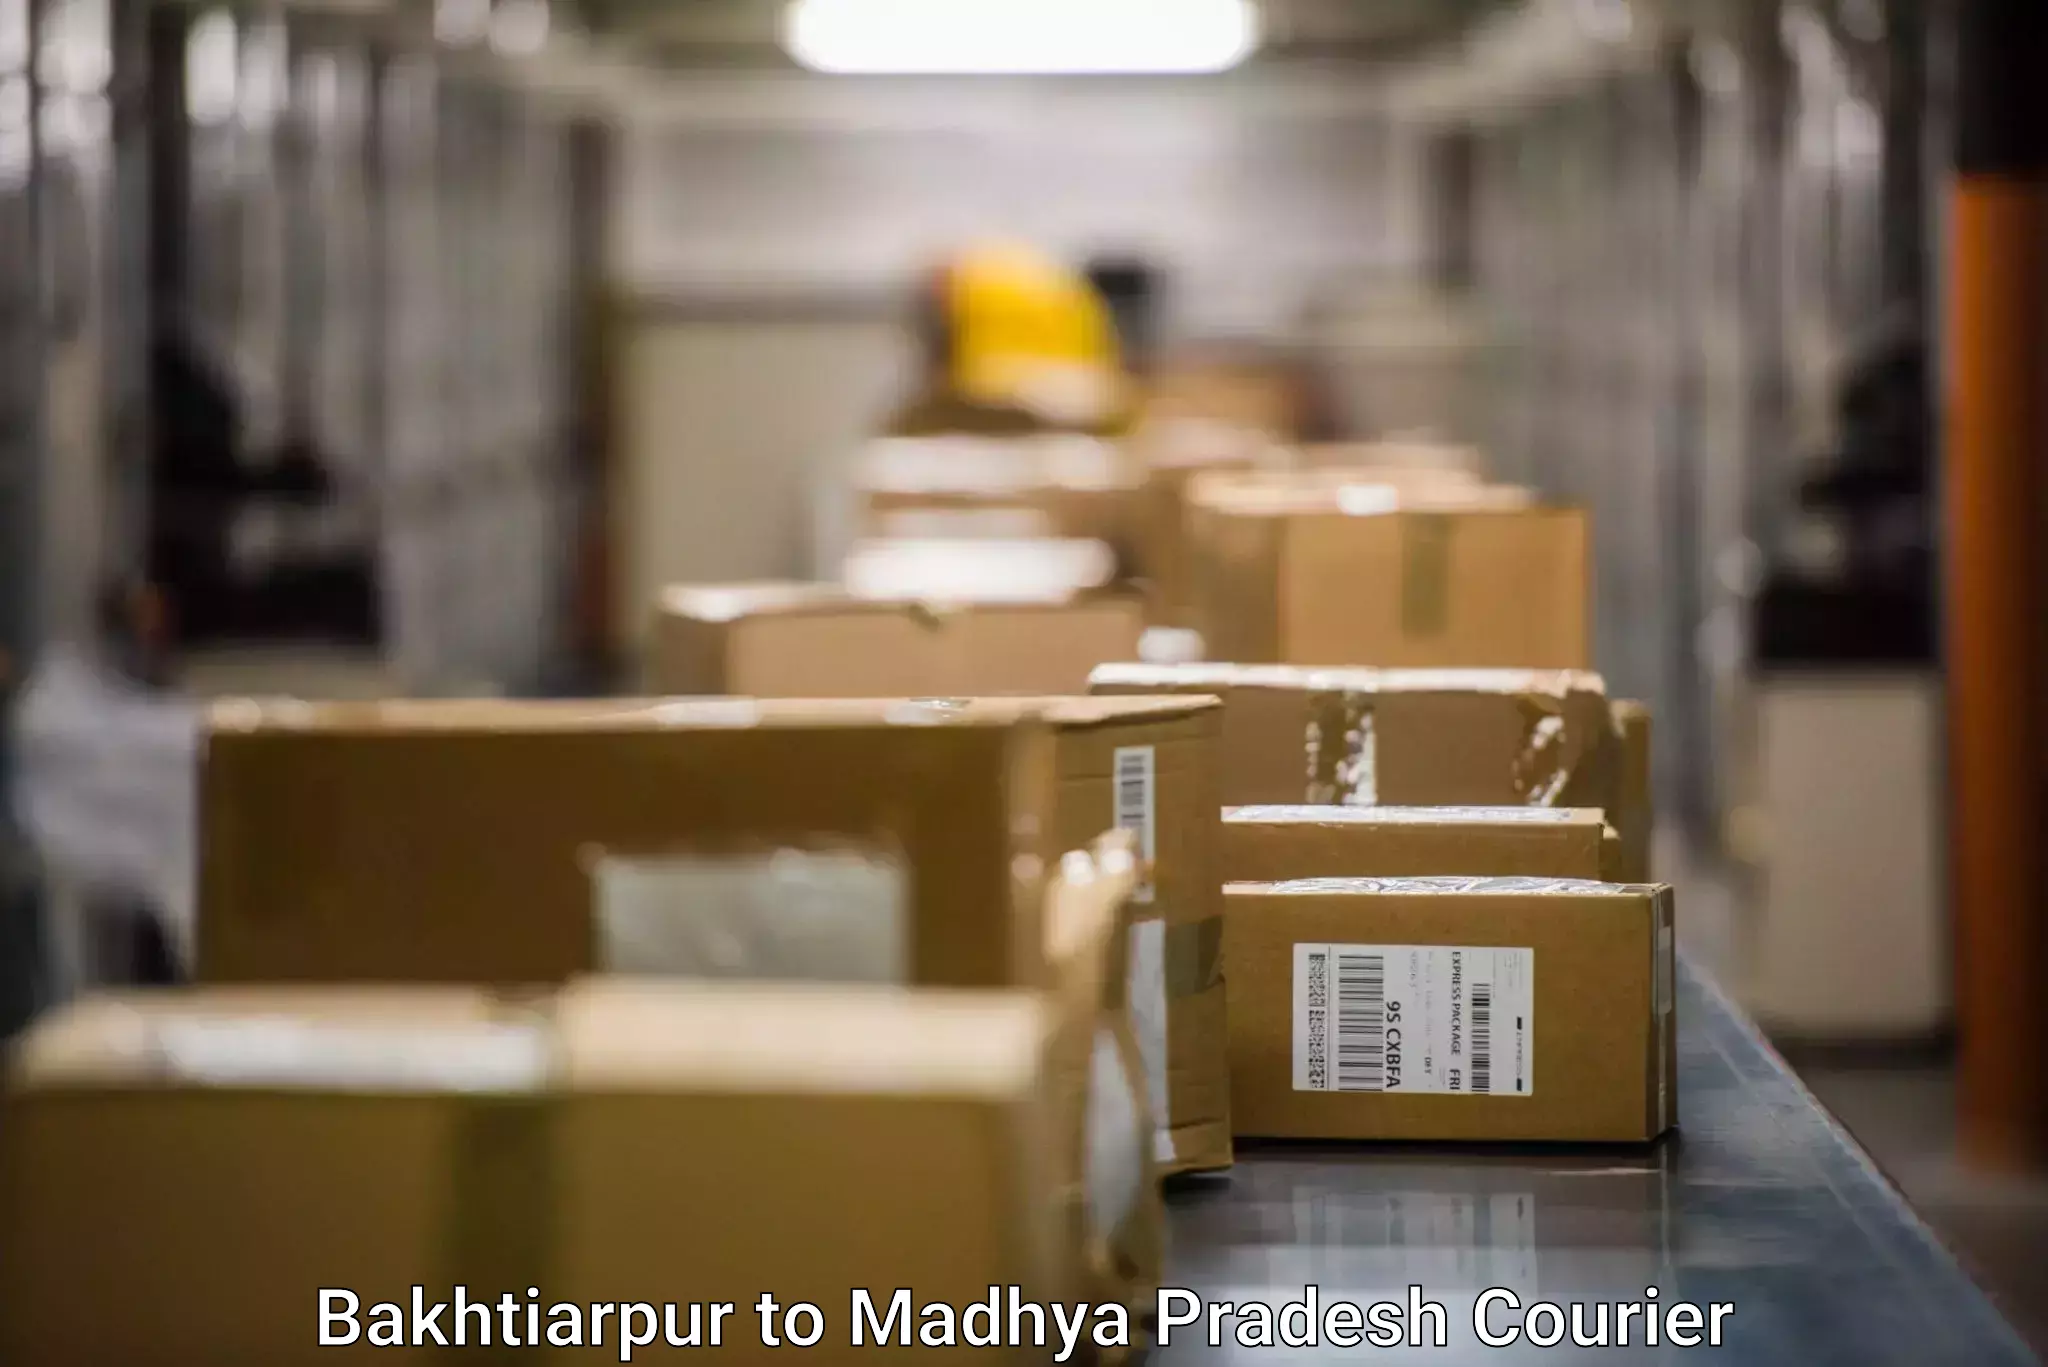 Professional parcel services Bakhtiarpur to Ratlam